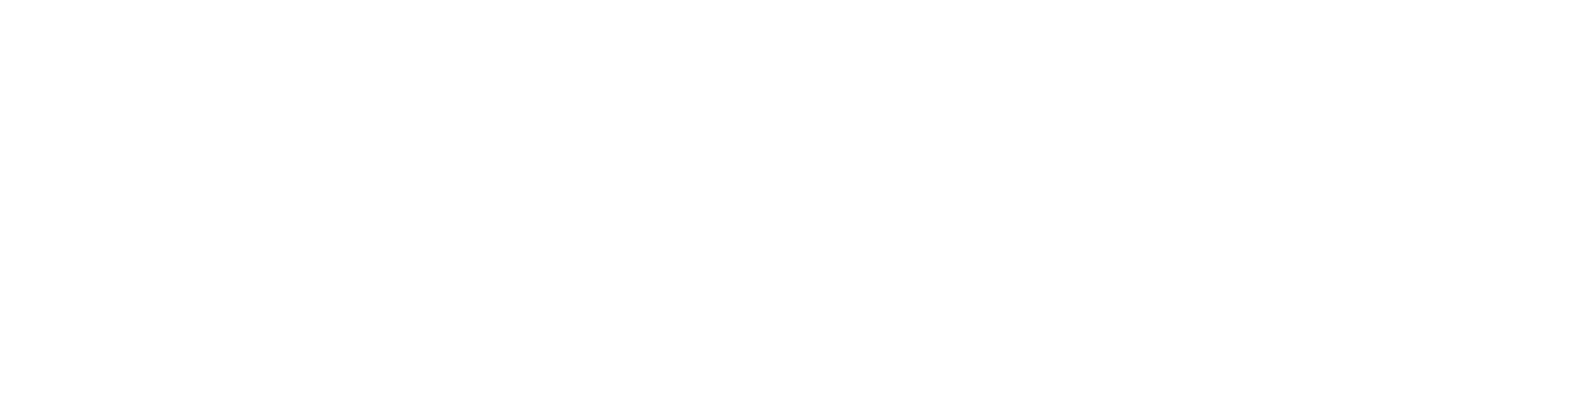 PropertyGuru Logo groß für dunkle Hintergründe (transparentes PNG)